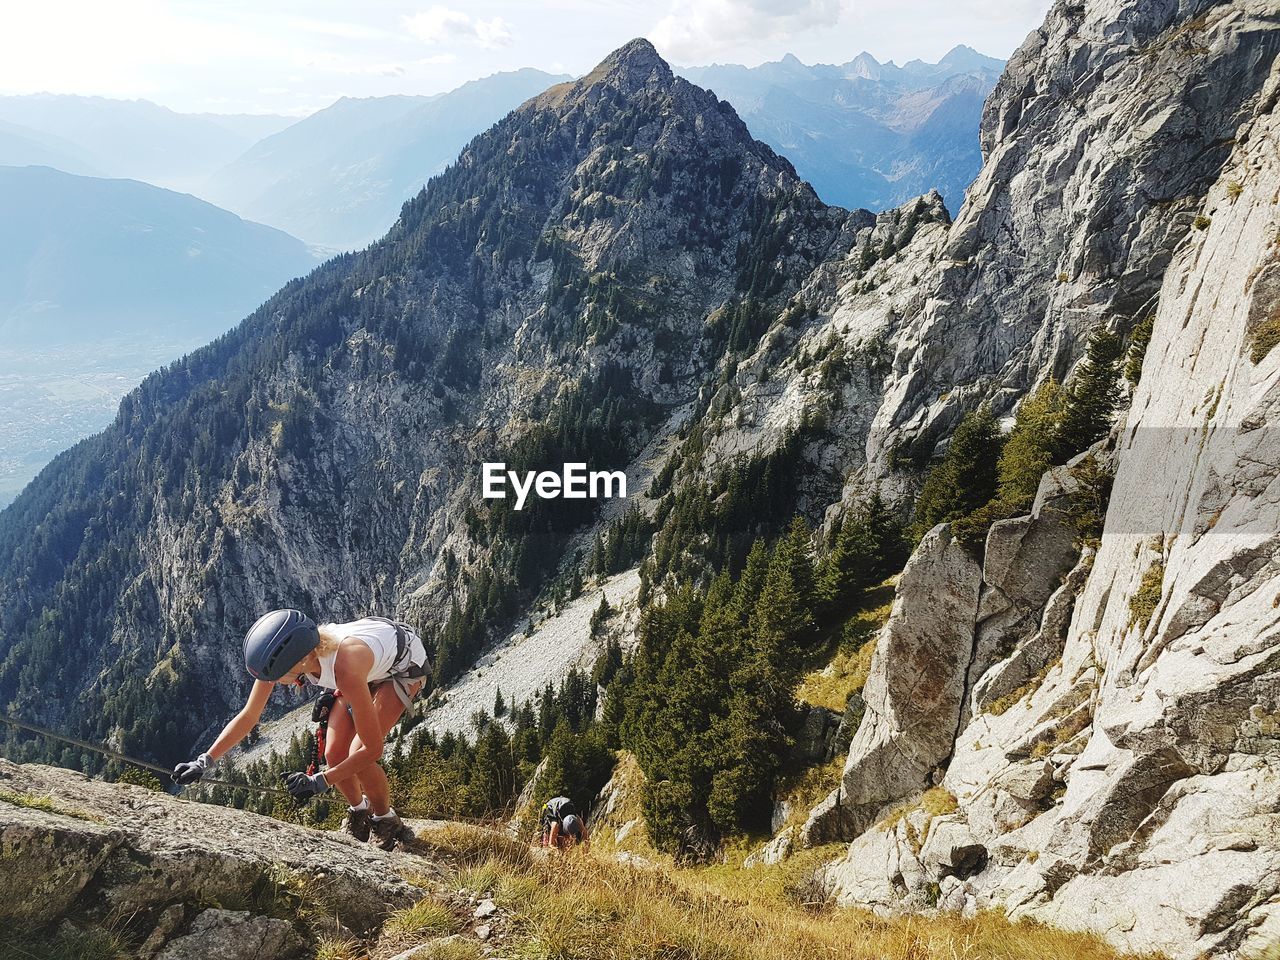 Woman climbing mountains